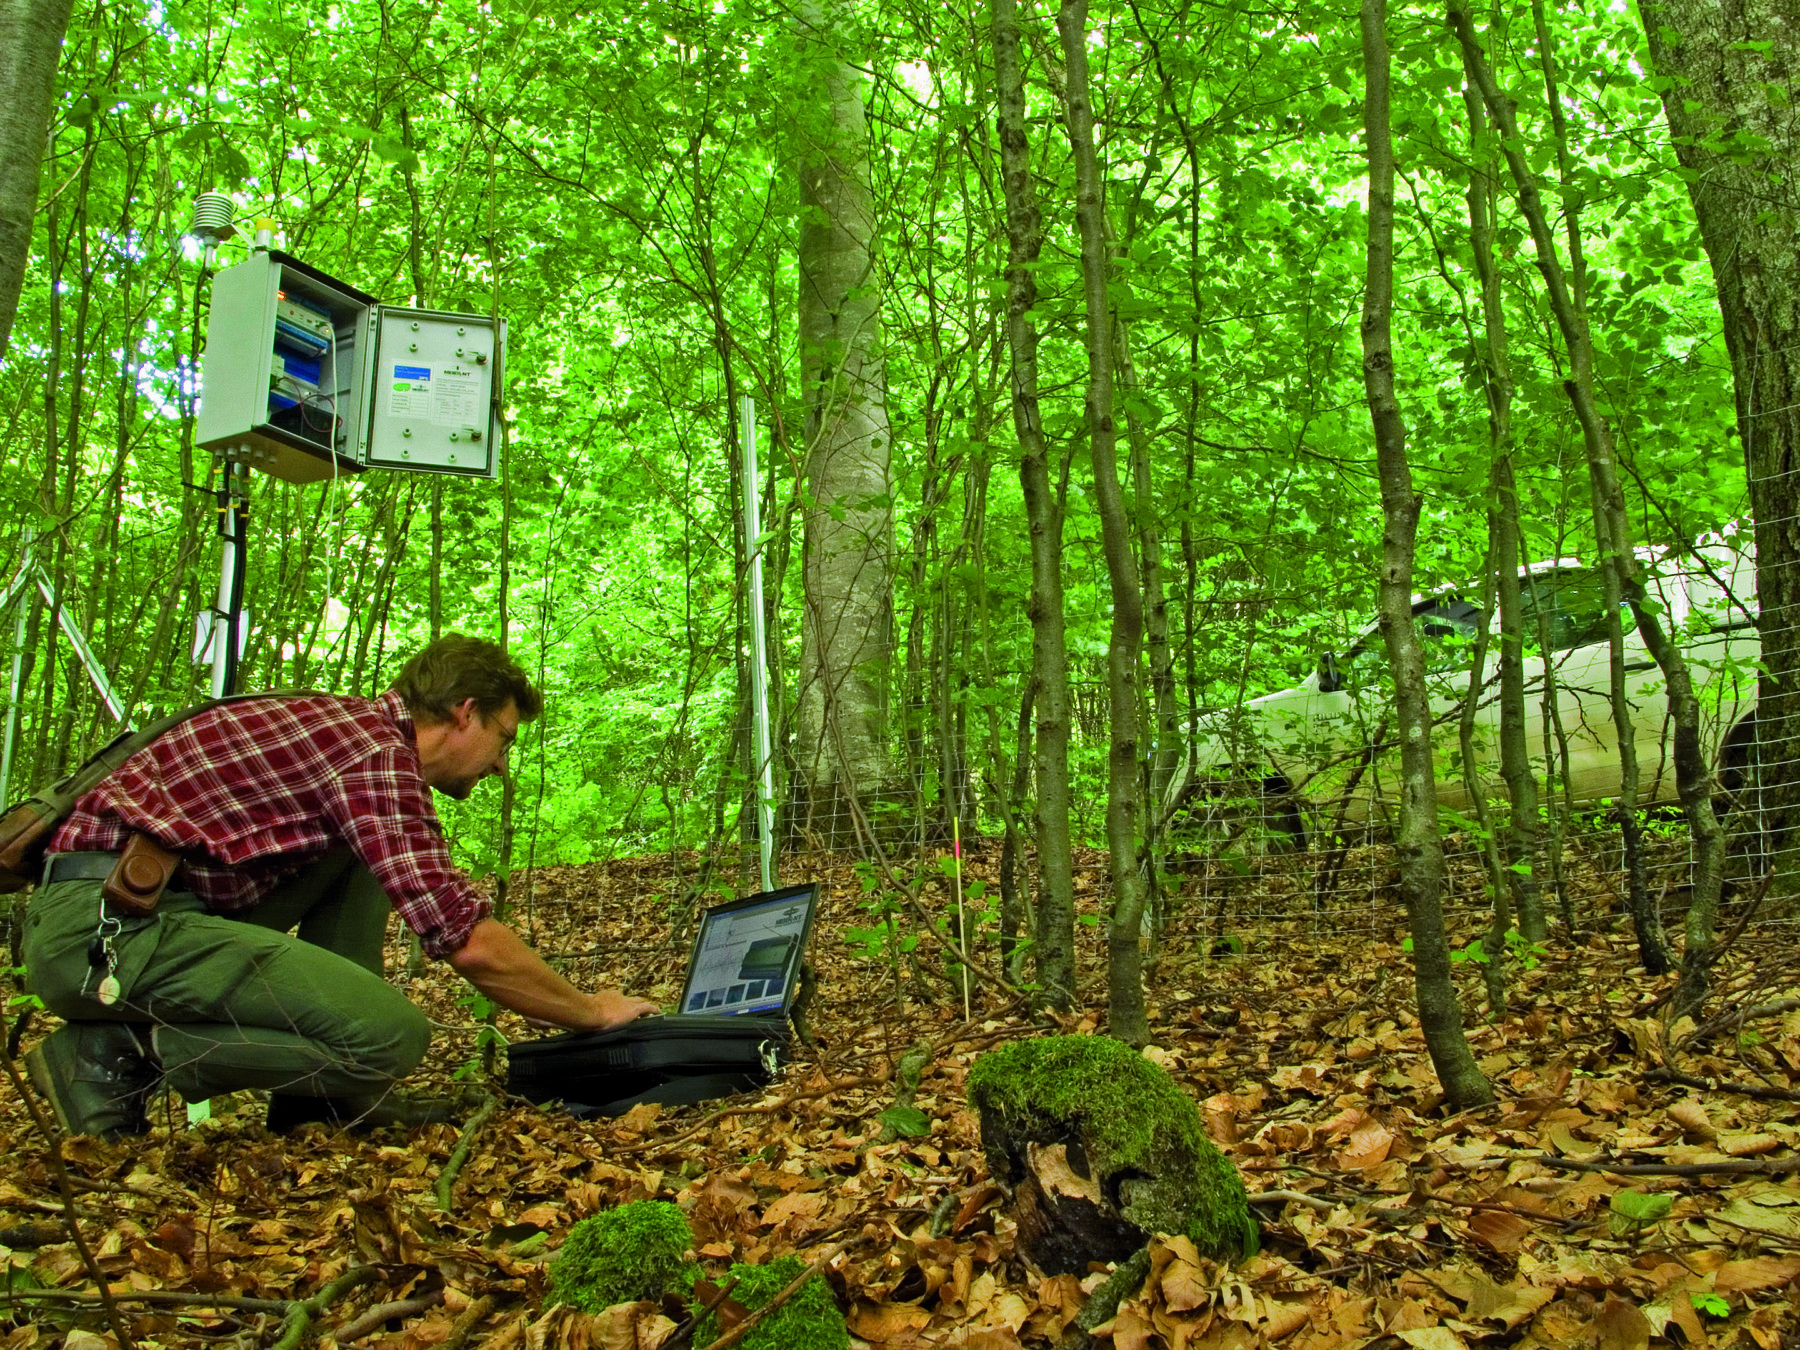 Abbildung: Das Foto zeigt in einem schattigen Wald einen knieenden Mechatroniker an einem Läpptopp beim Auslesen der Daten einer Mess-Station.